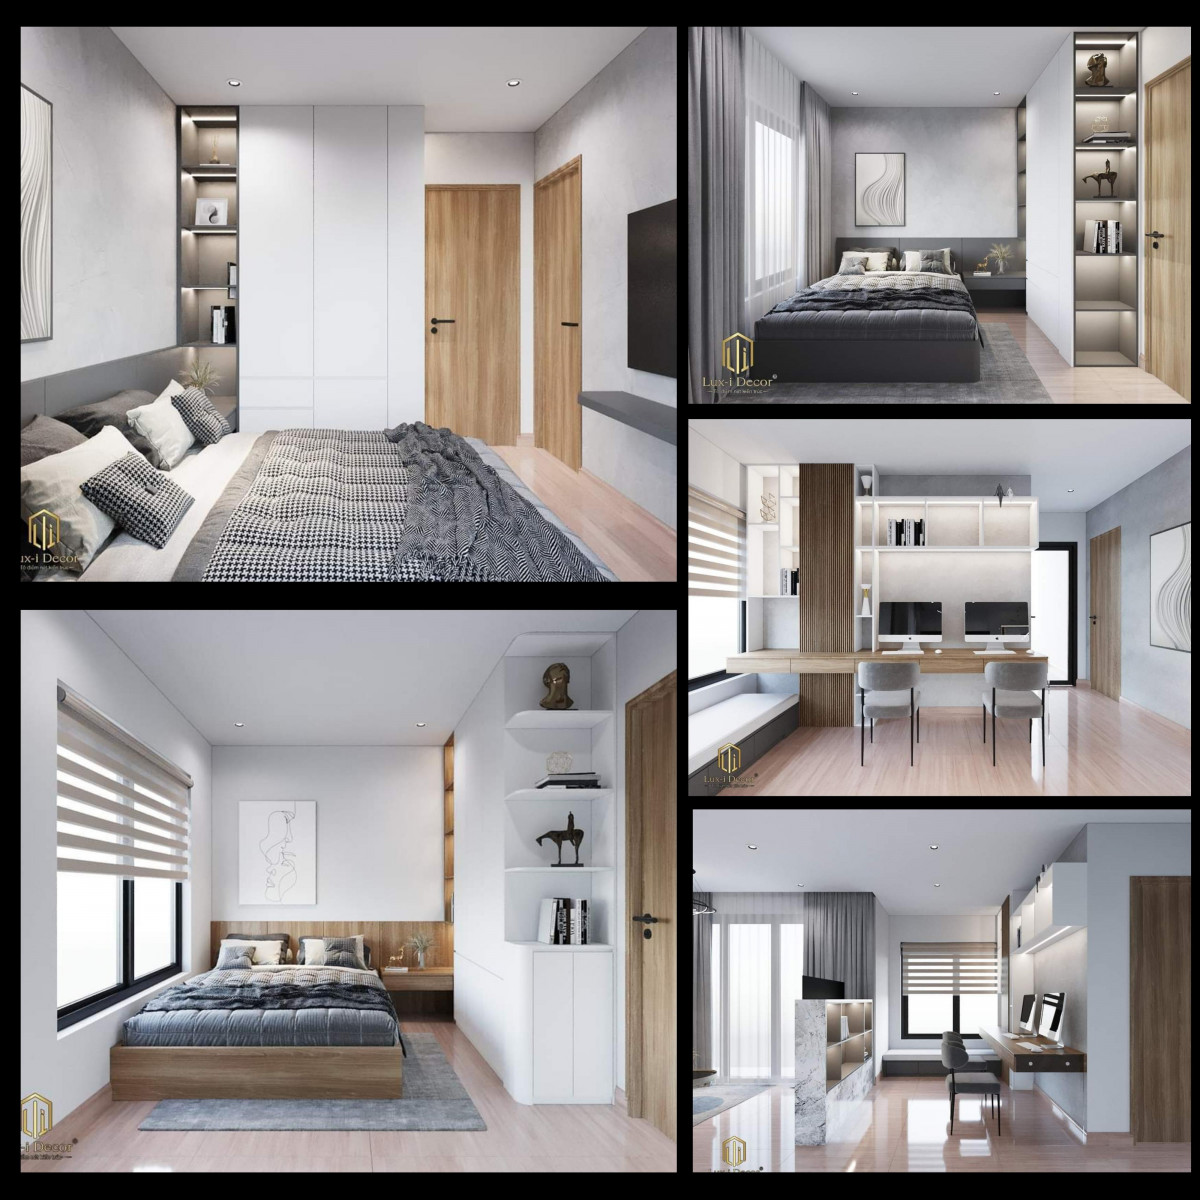 Mẫu thiết kế nội thất căn hộ 69m2 - Vinhomes Grand Park quận 9